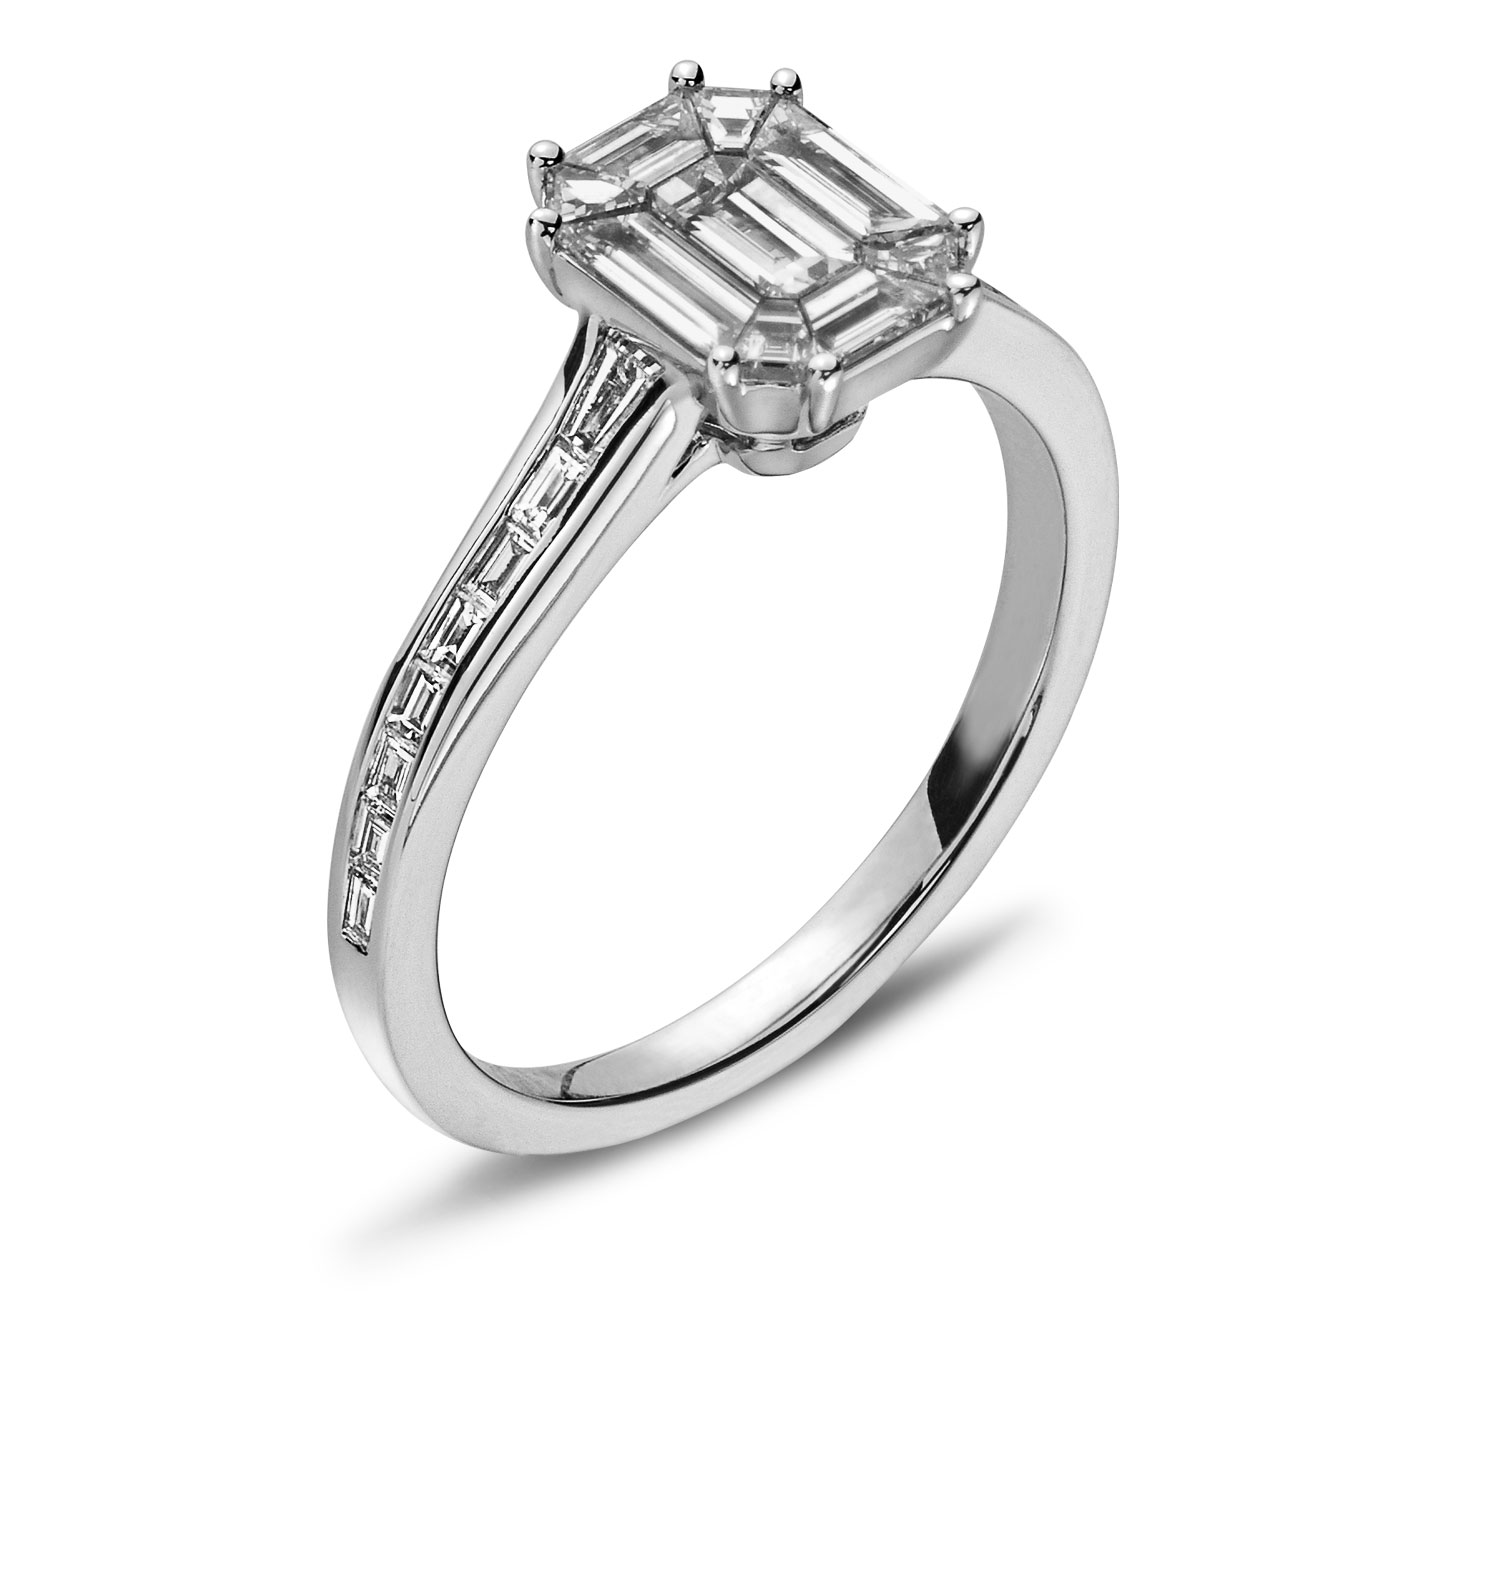 AURONOS Prestige Ring Weissgold 18K Diamanten 0.69ct, Baguette 0.21ct und Trapez Diamanten 0.10ct